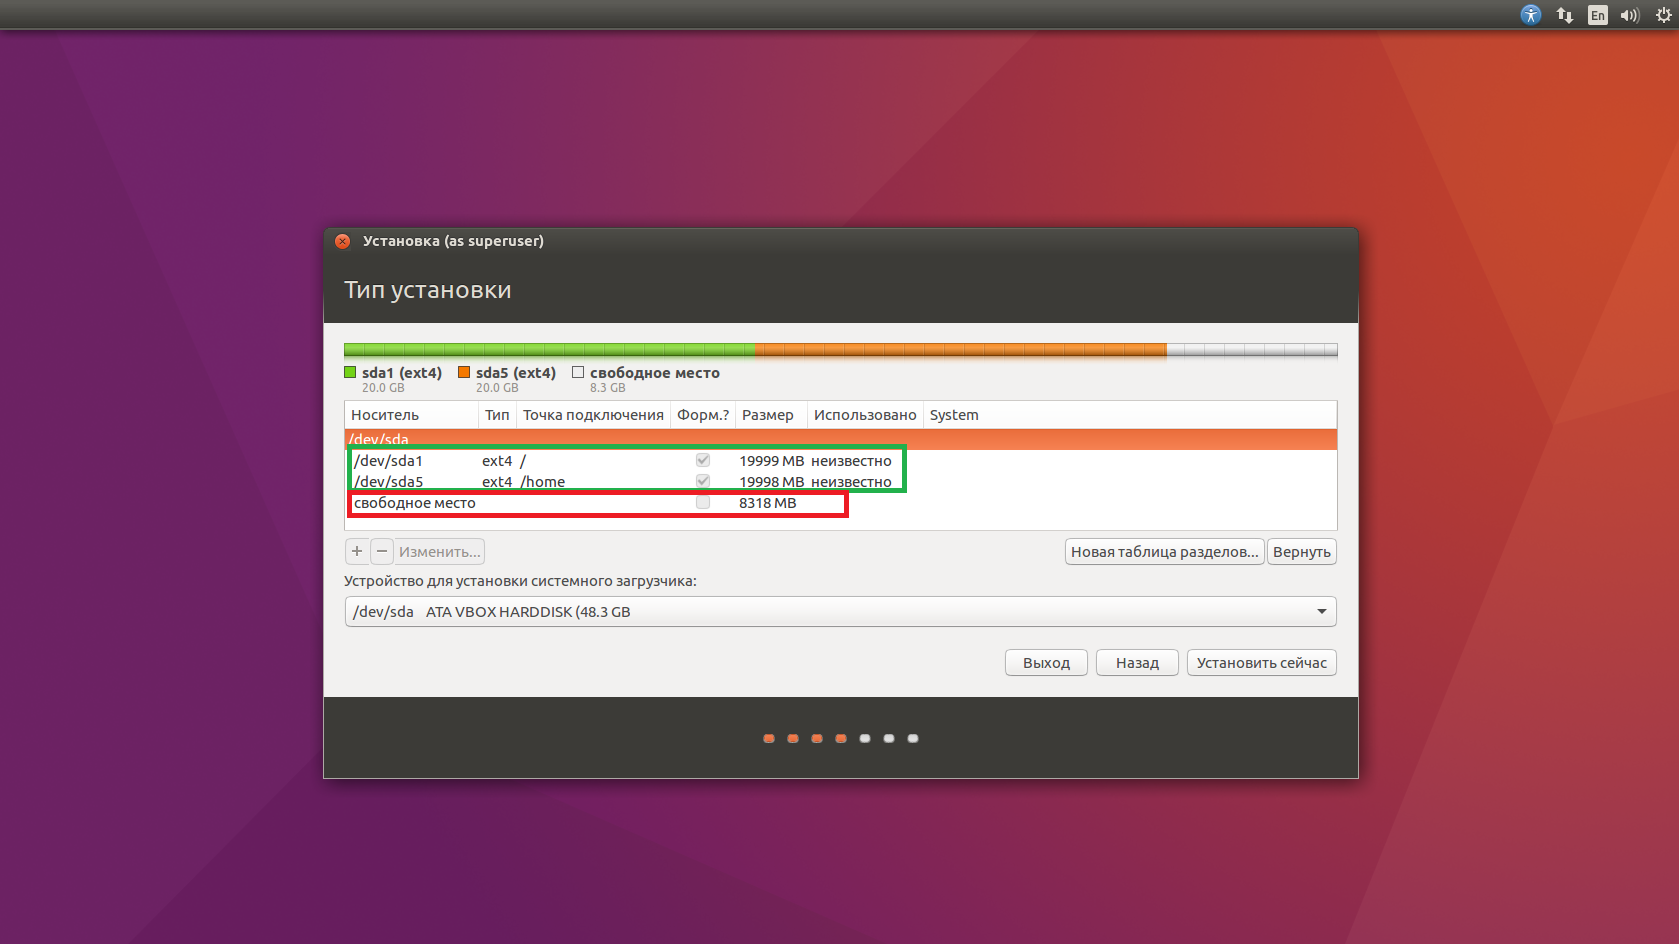 Как установить ubuntu на флешку - подробная инструкция
как установить ubuntu на флешку - подробная инструкция